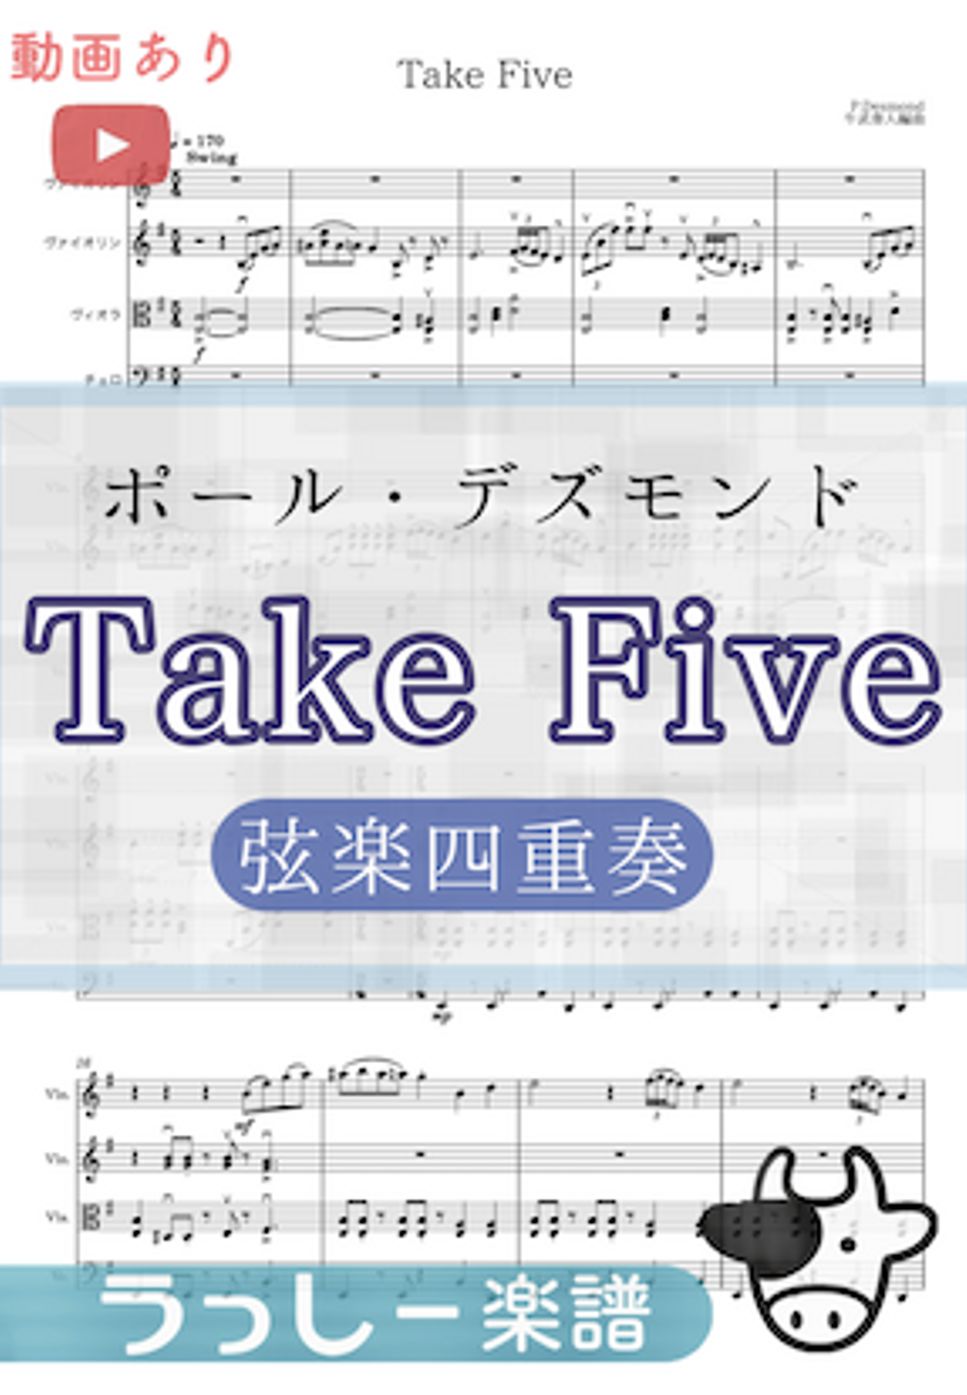 ポール・デズモンド - TAKE FIVE (弦楽四重奏) by 牛武奏人